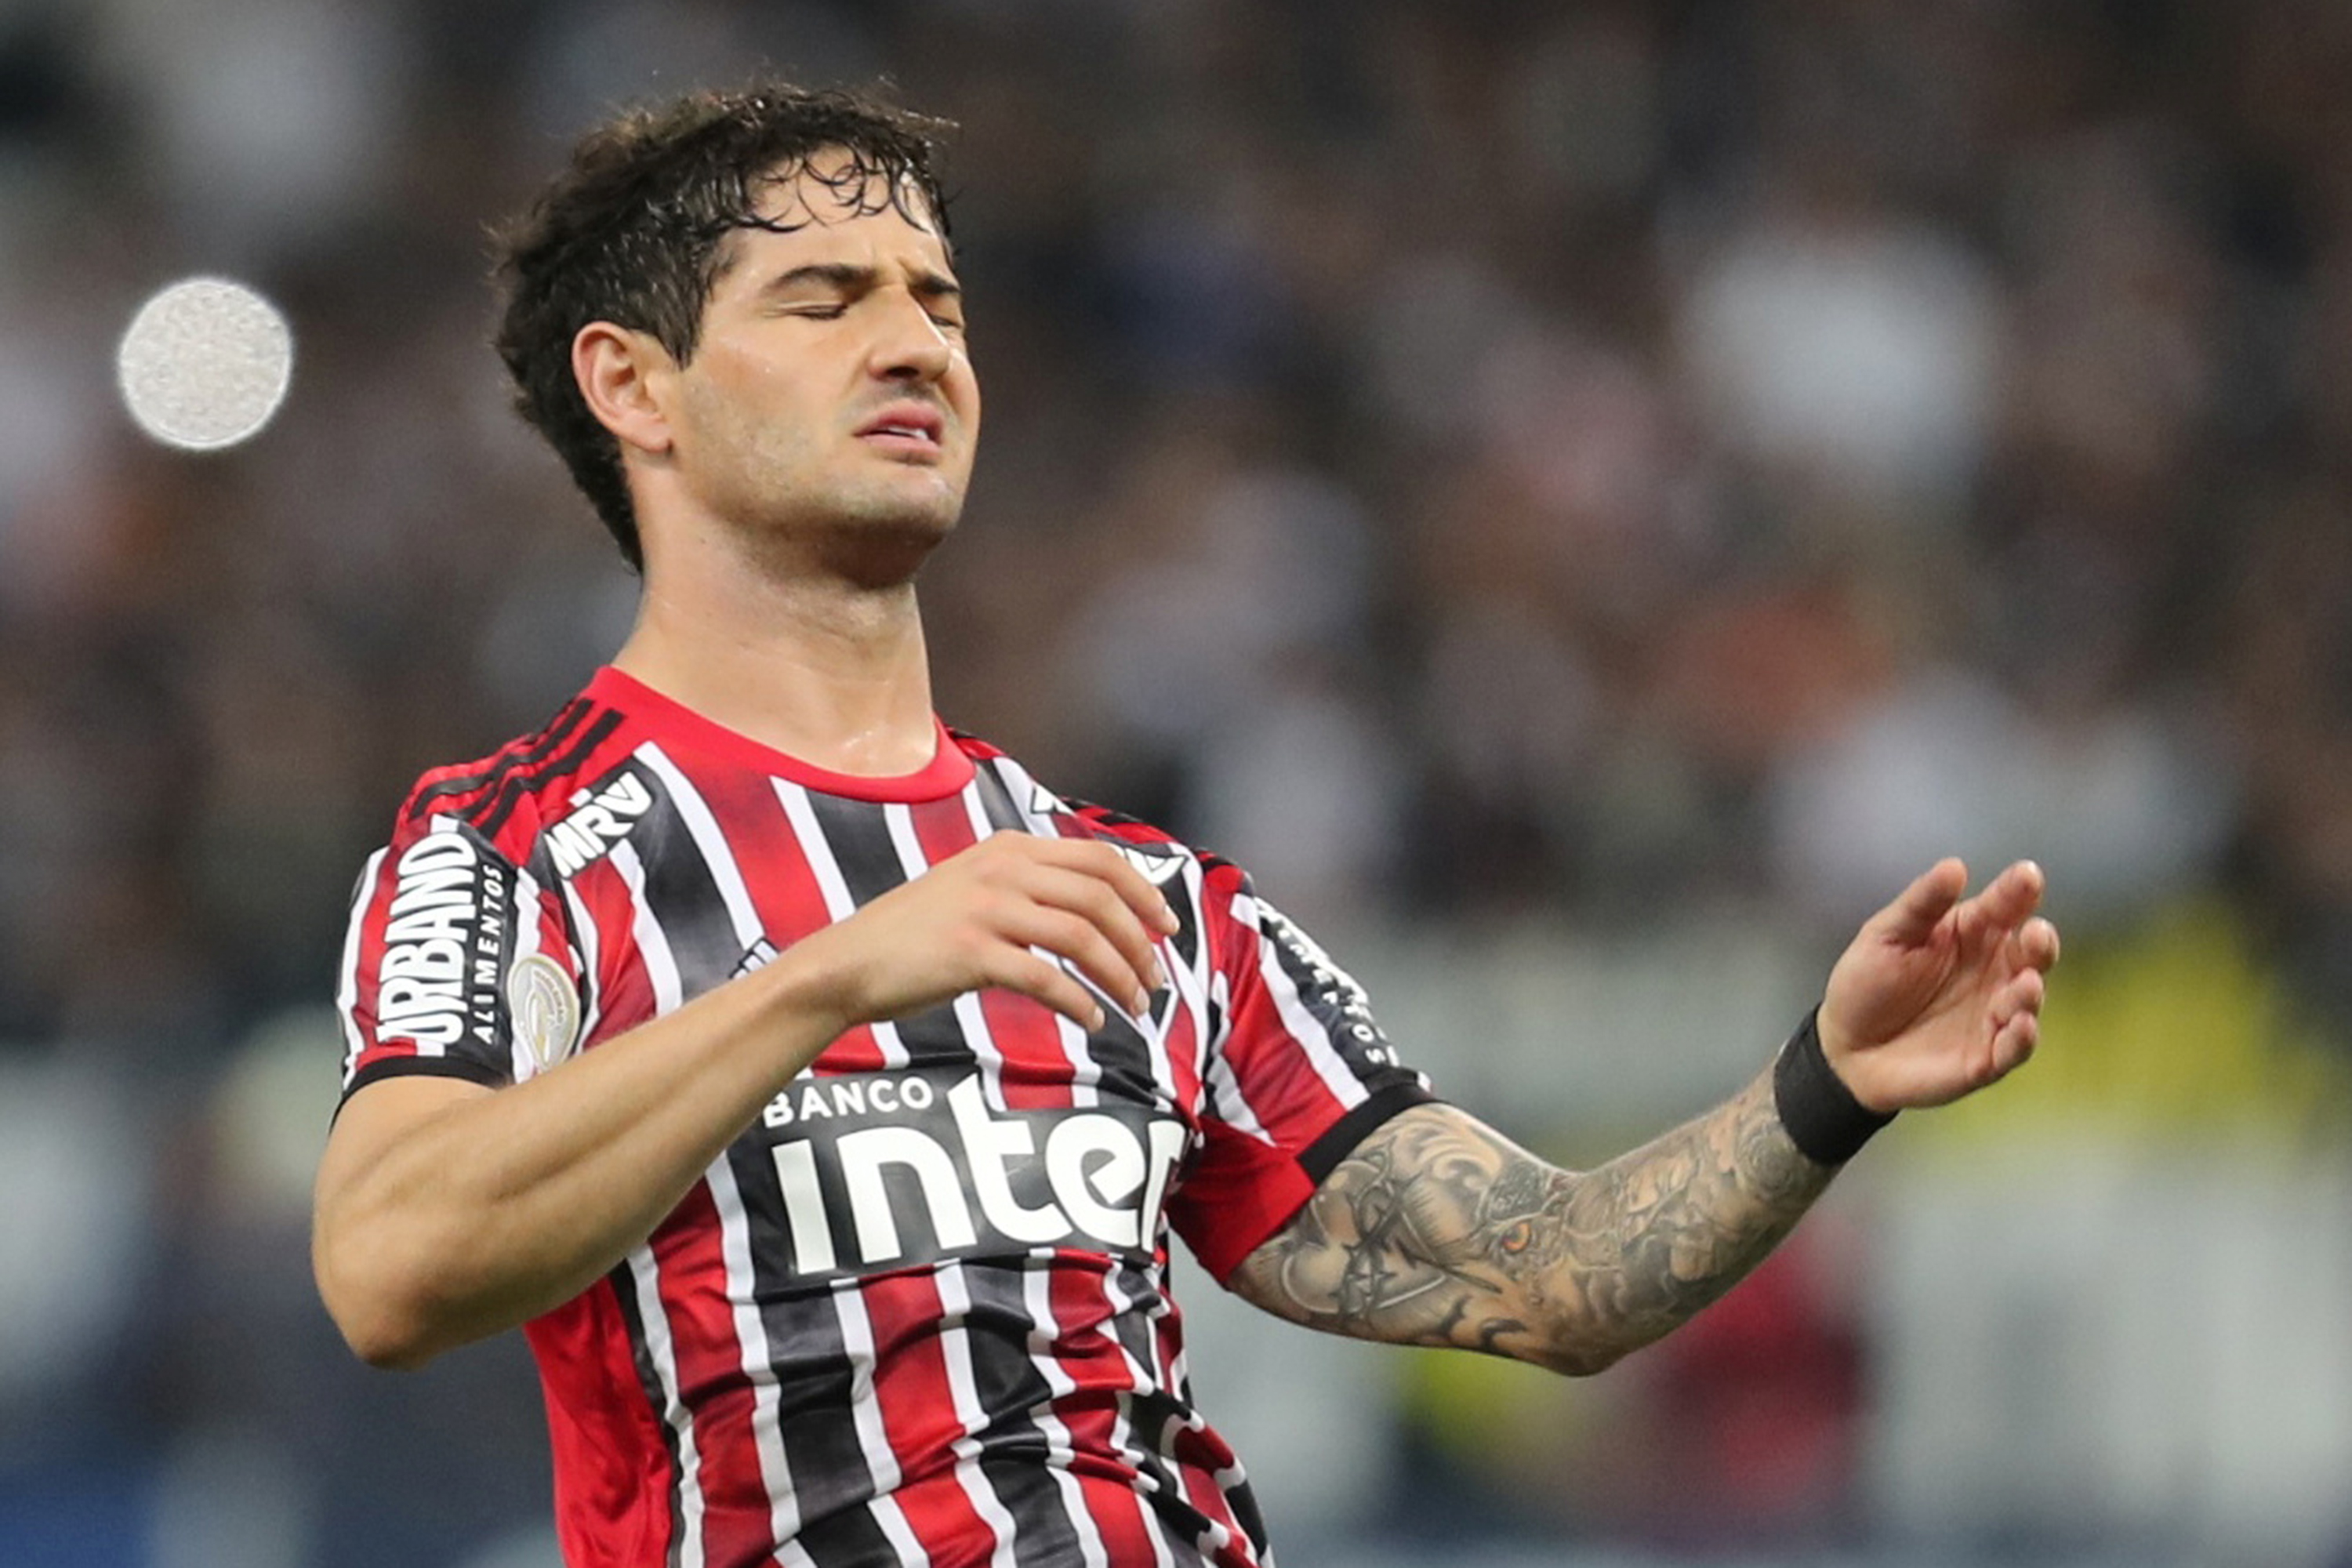 ‘Não joguei bem’, diz Pato após derrota em reencontro com Corinthians